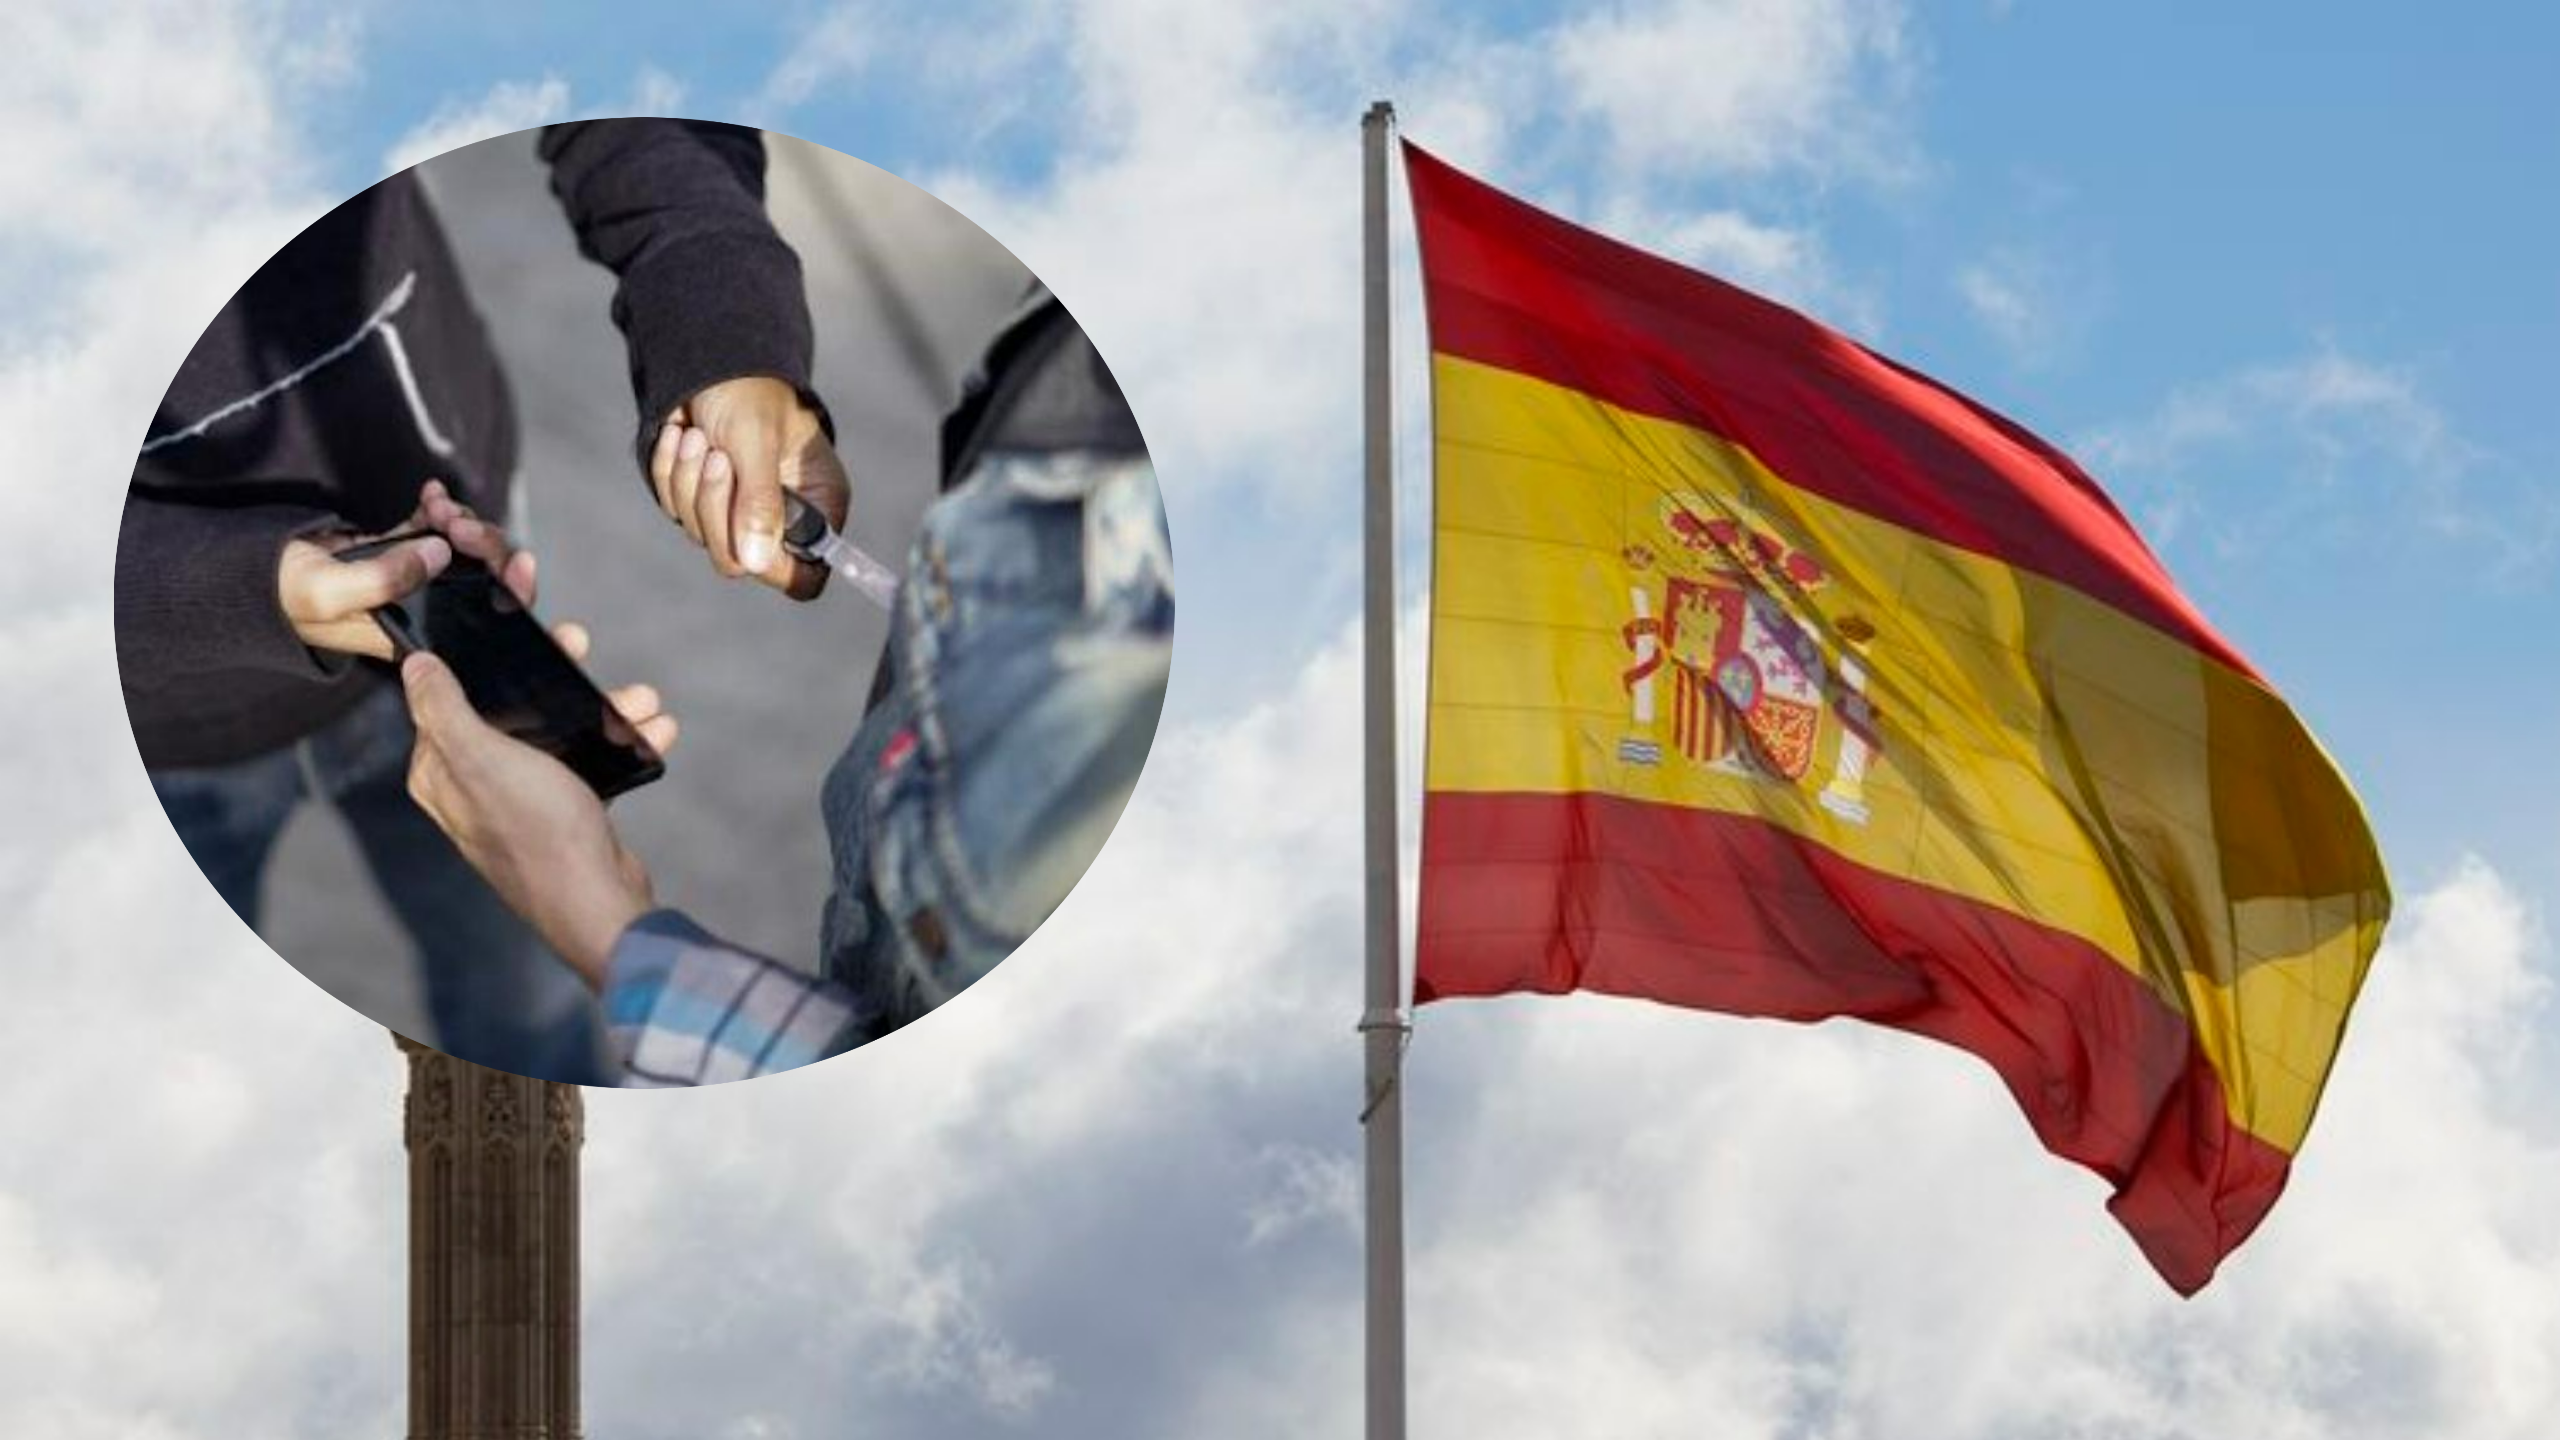 Colombiana regaña a connacionales que estaban robando en España: “De Colombia se viene a trabajar no a robar”